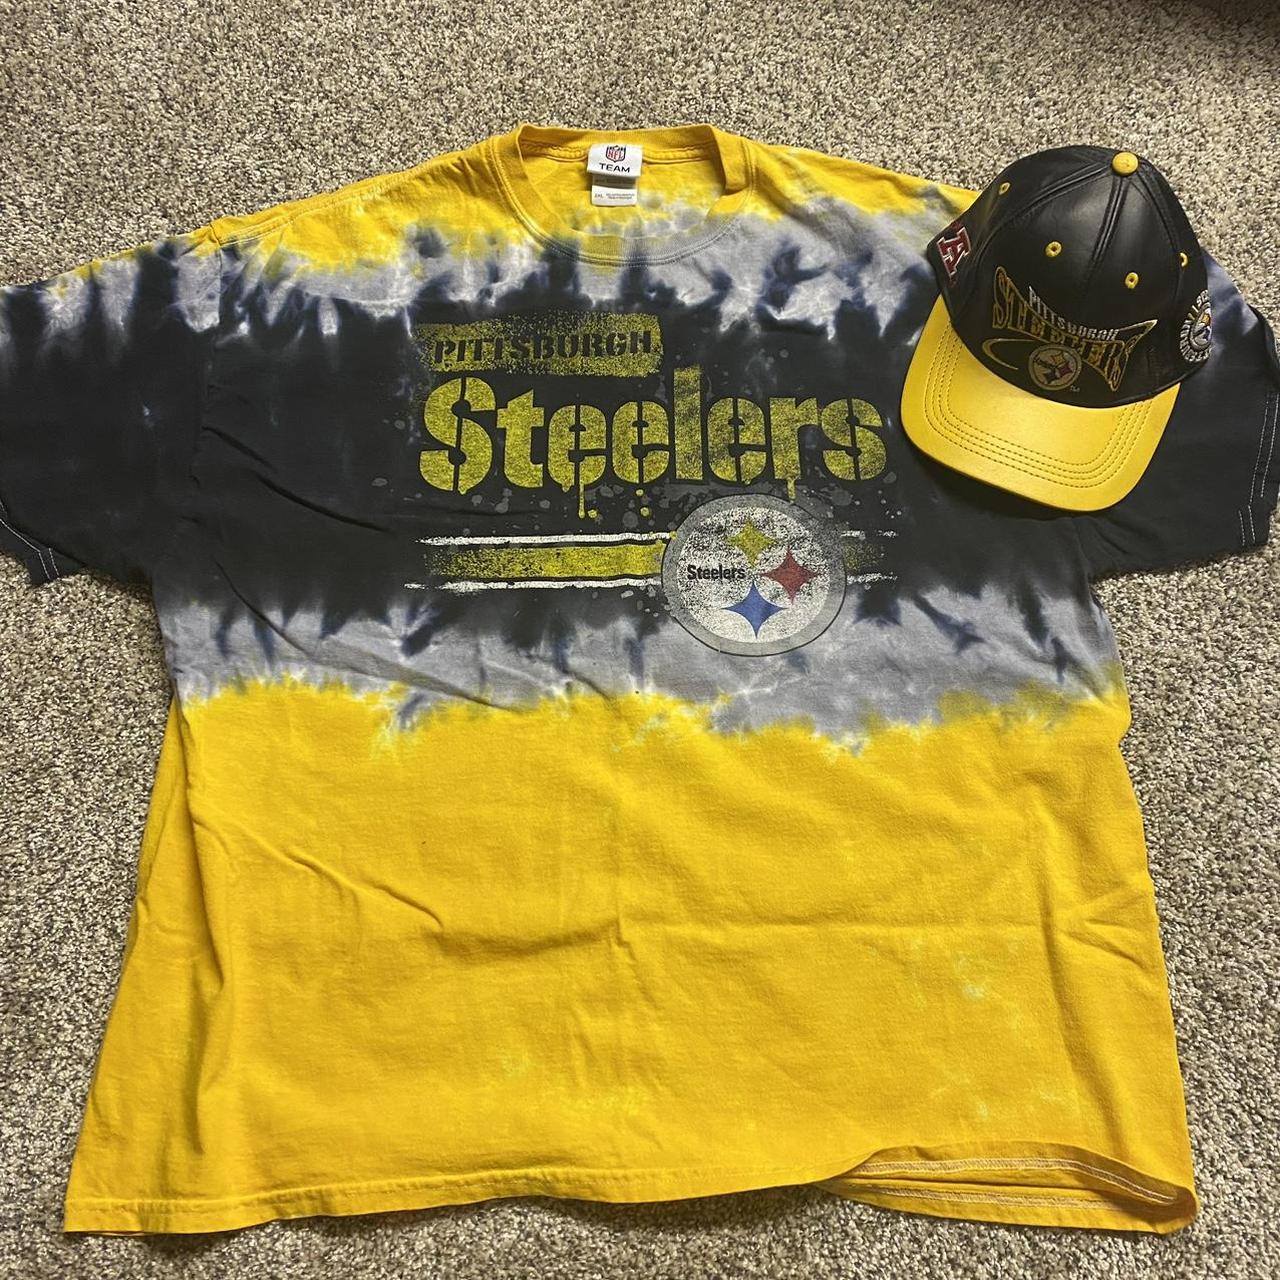 Tye-dye Steelers tee and vintage hat Tee is size... - Depop